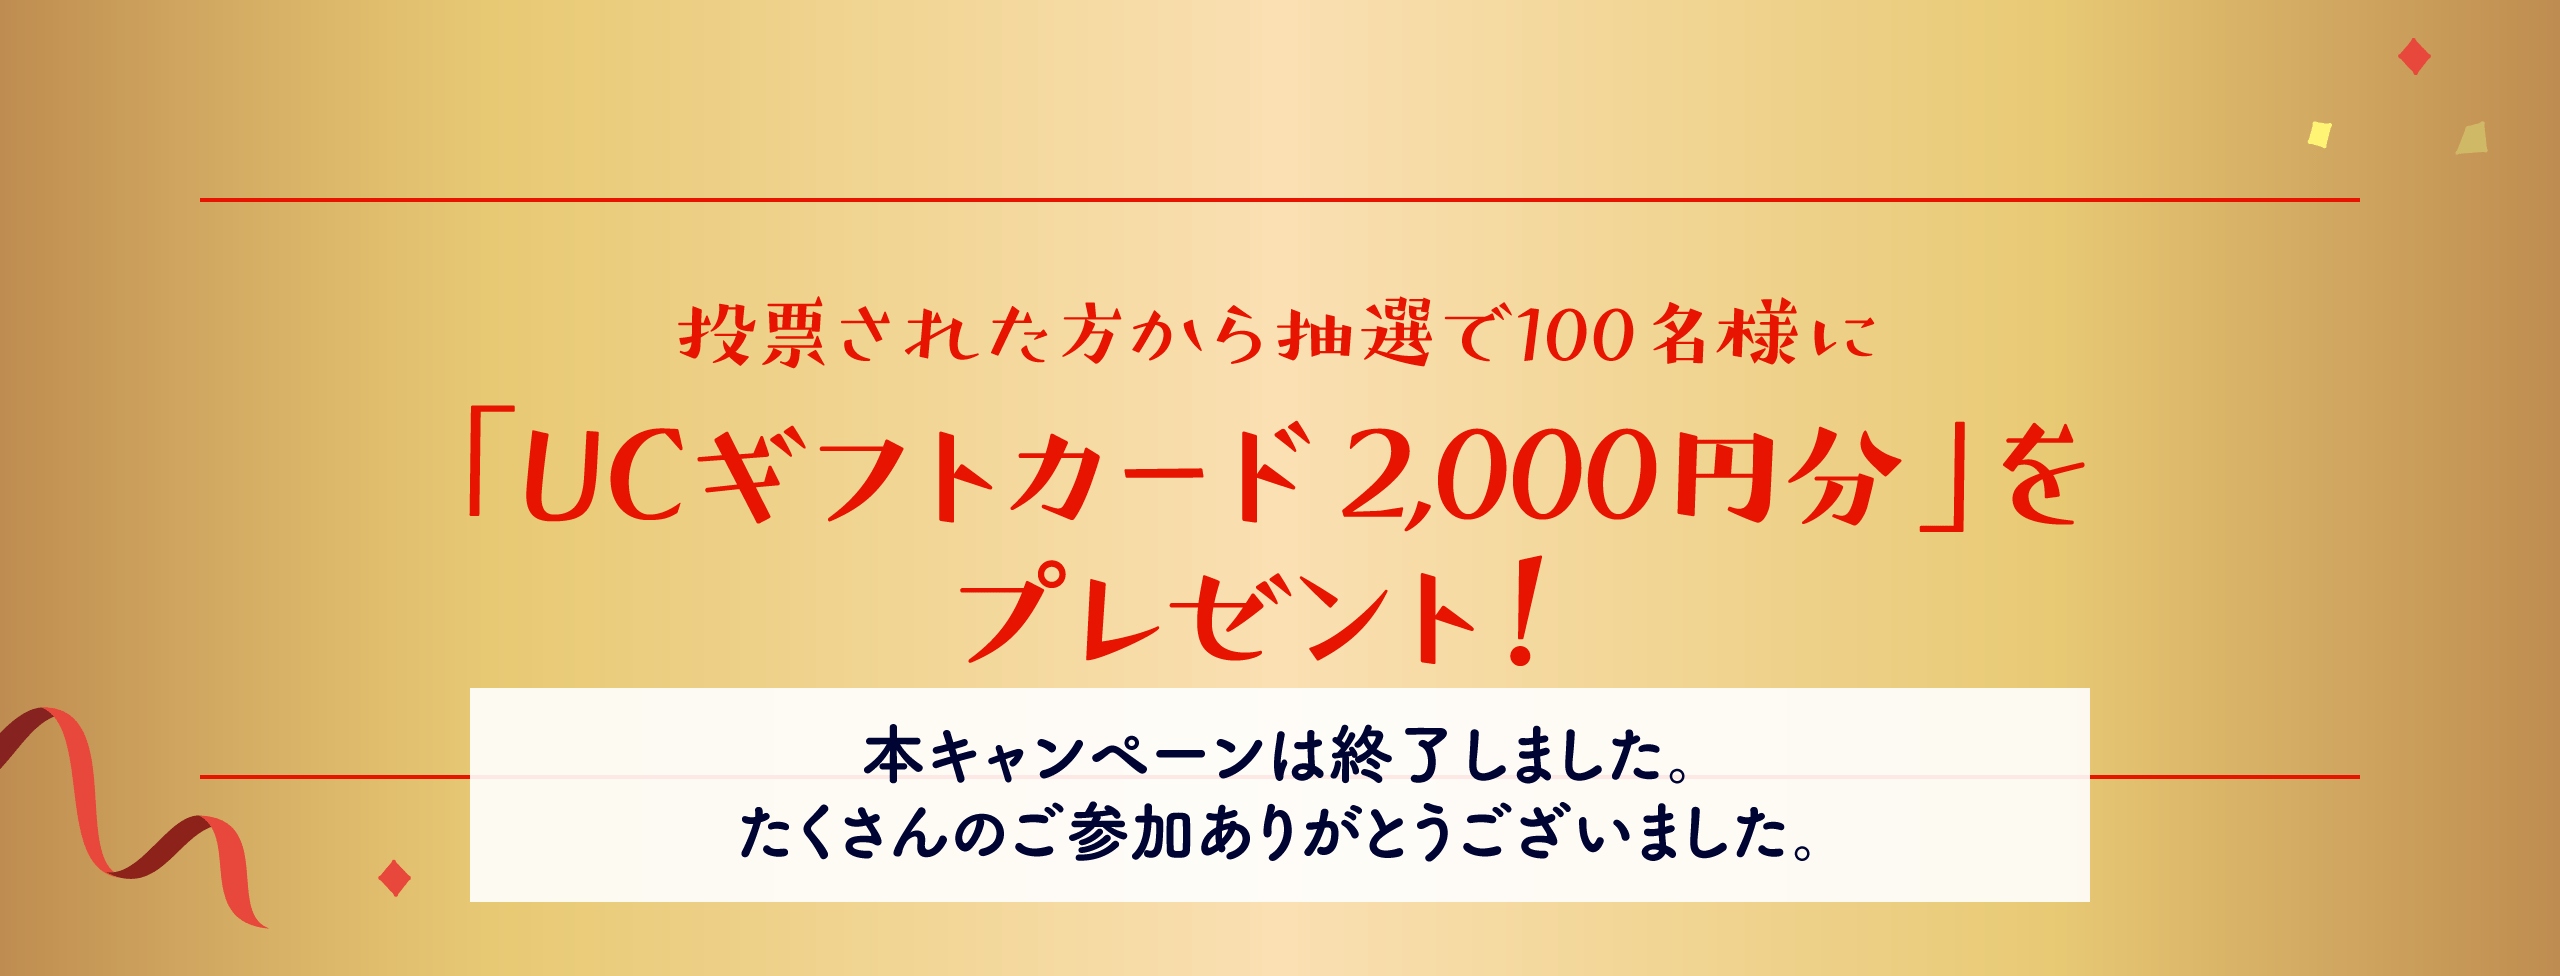 投票された方から抽選で100名様に「UCギフトカード2,000円分」をプレゼント！【本キャンペーンは終了しました。たくさんのご参加ありがとうございました。】